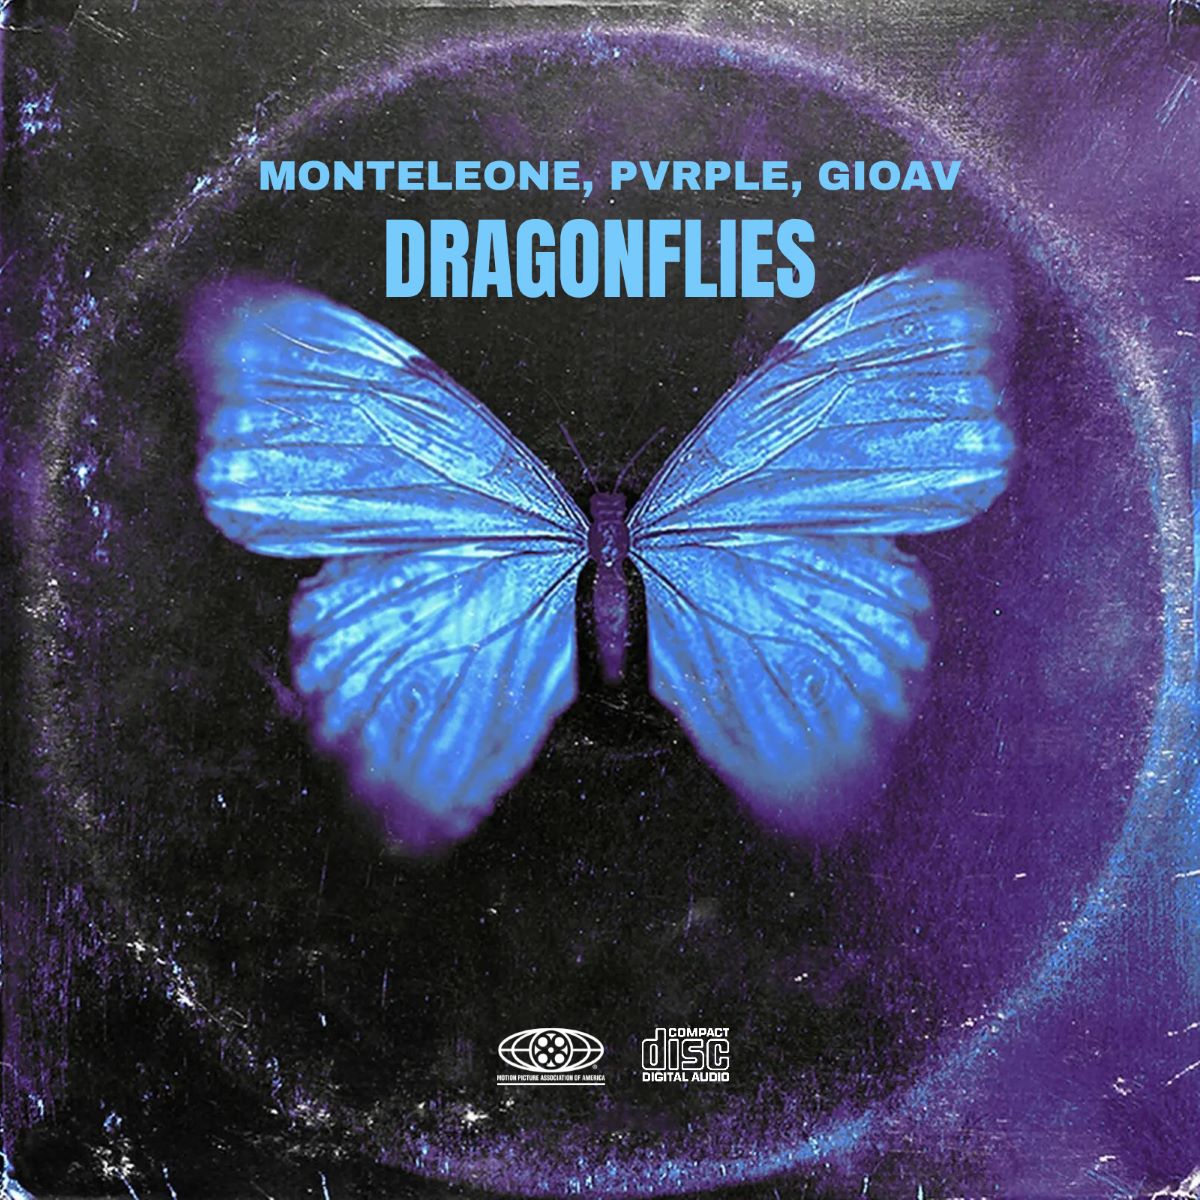 Monteleone & Pvrple &Gioav - “Dragonflies”